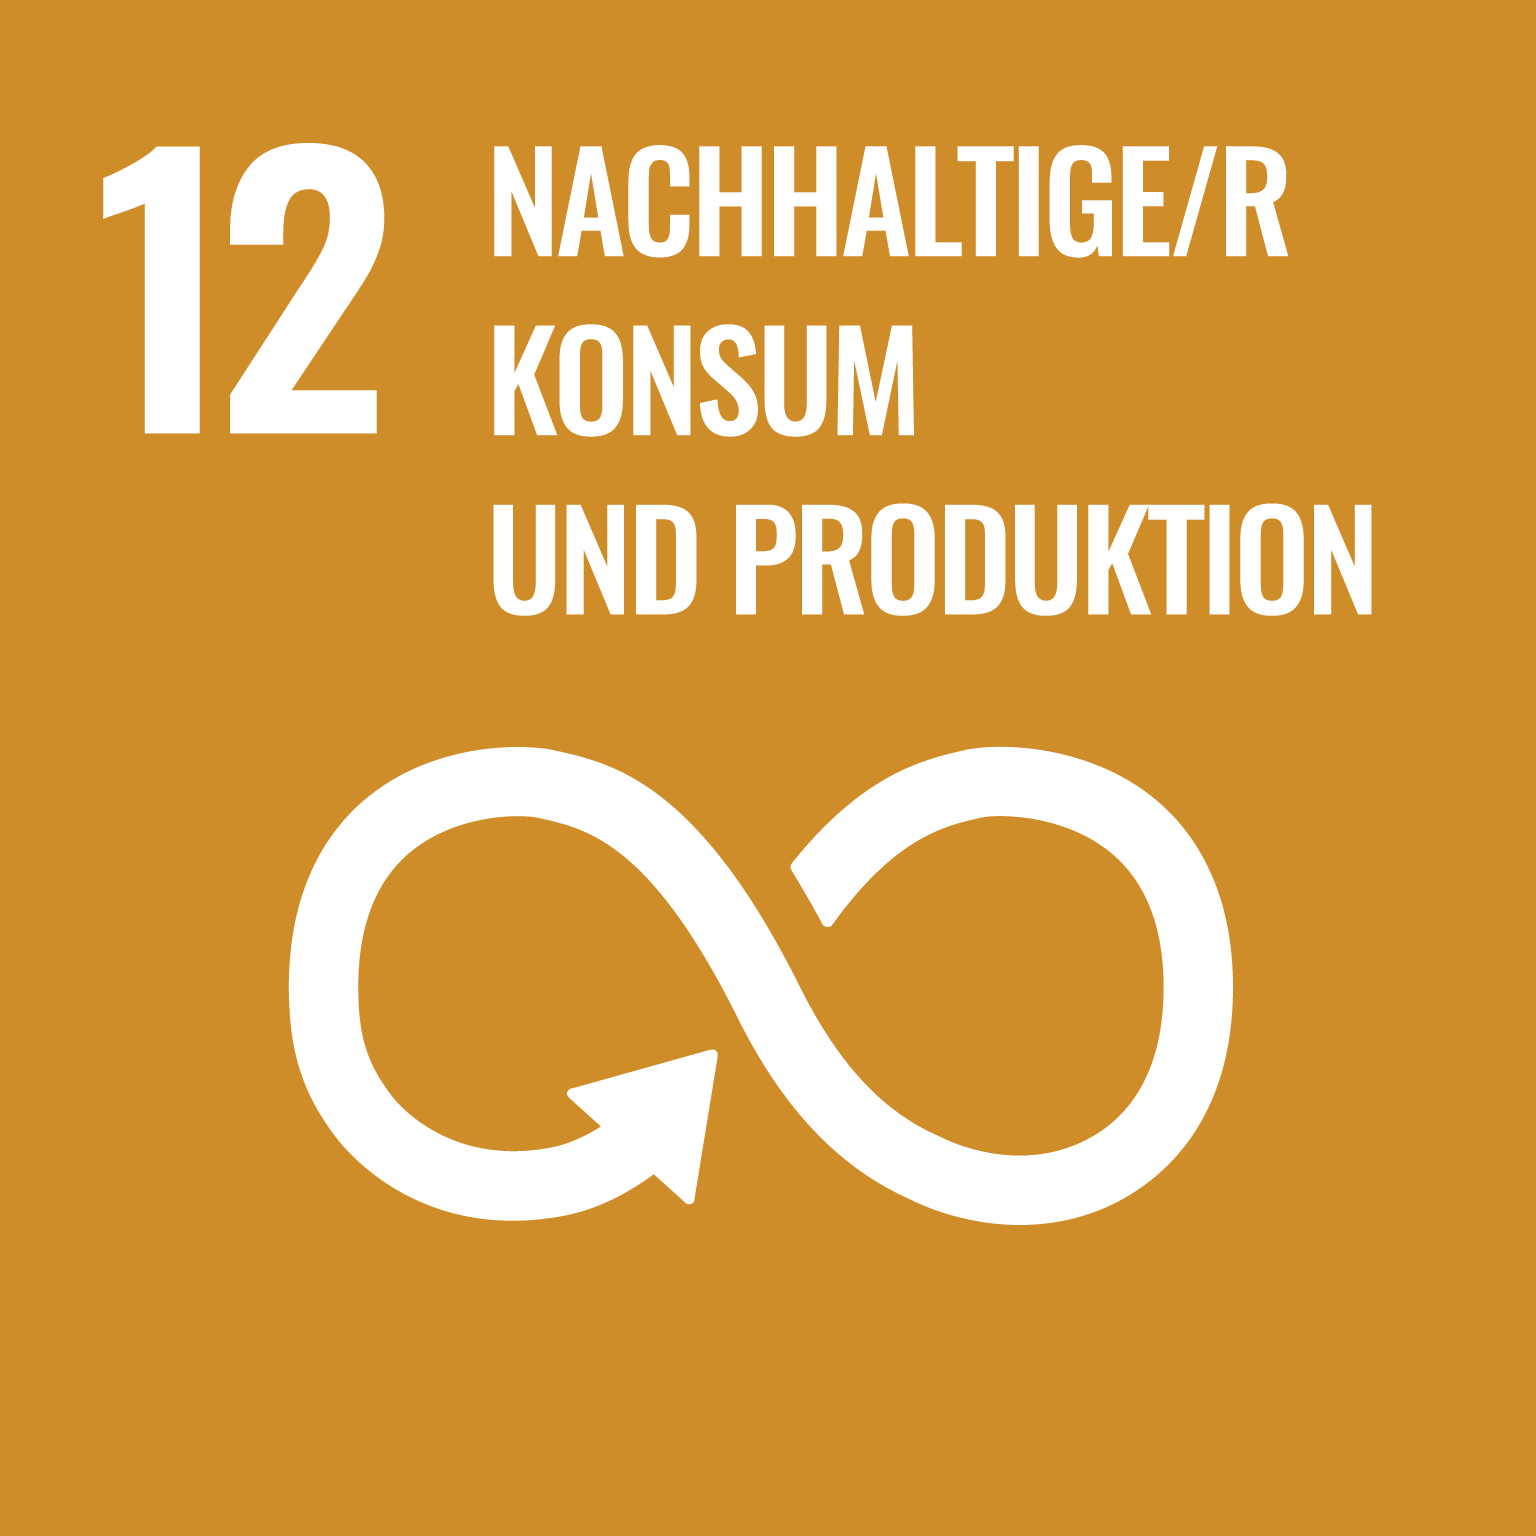 social development goal 12: nachhaltiger Konsum und Produktion